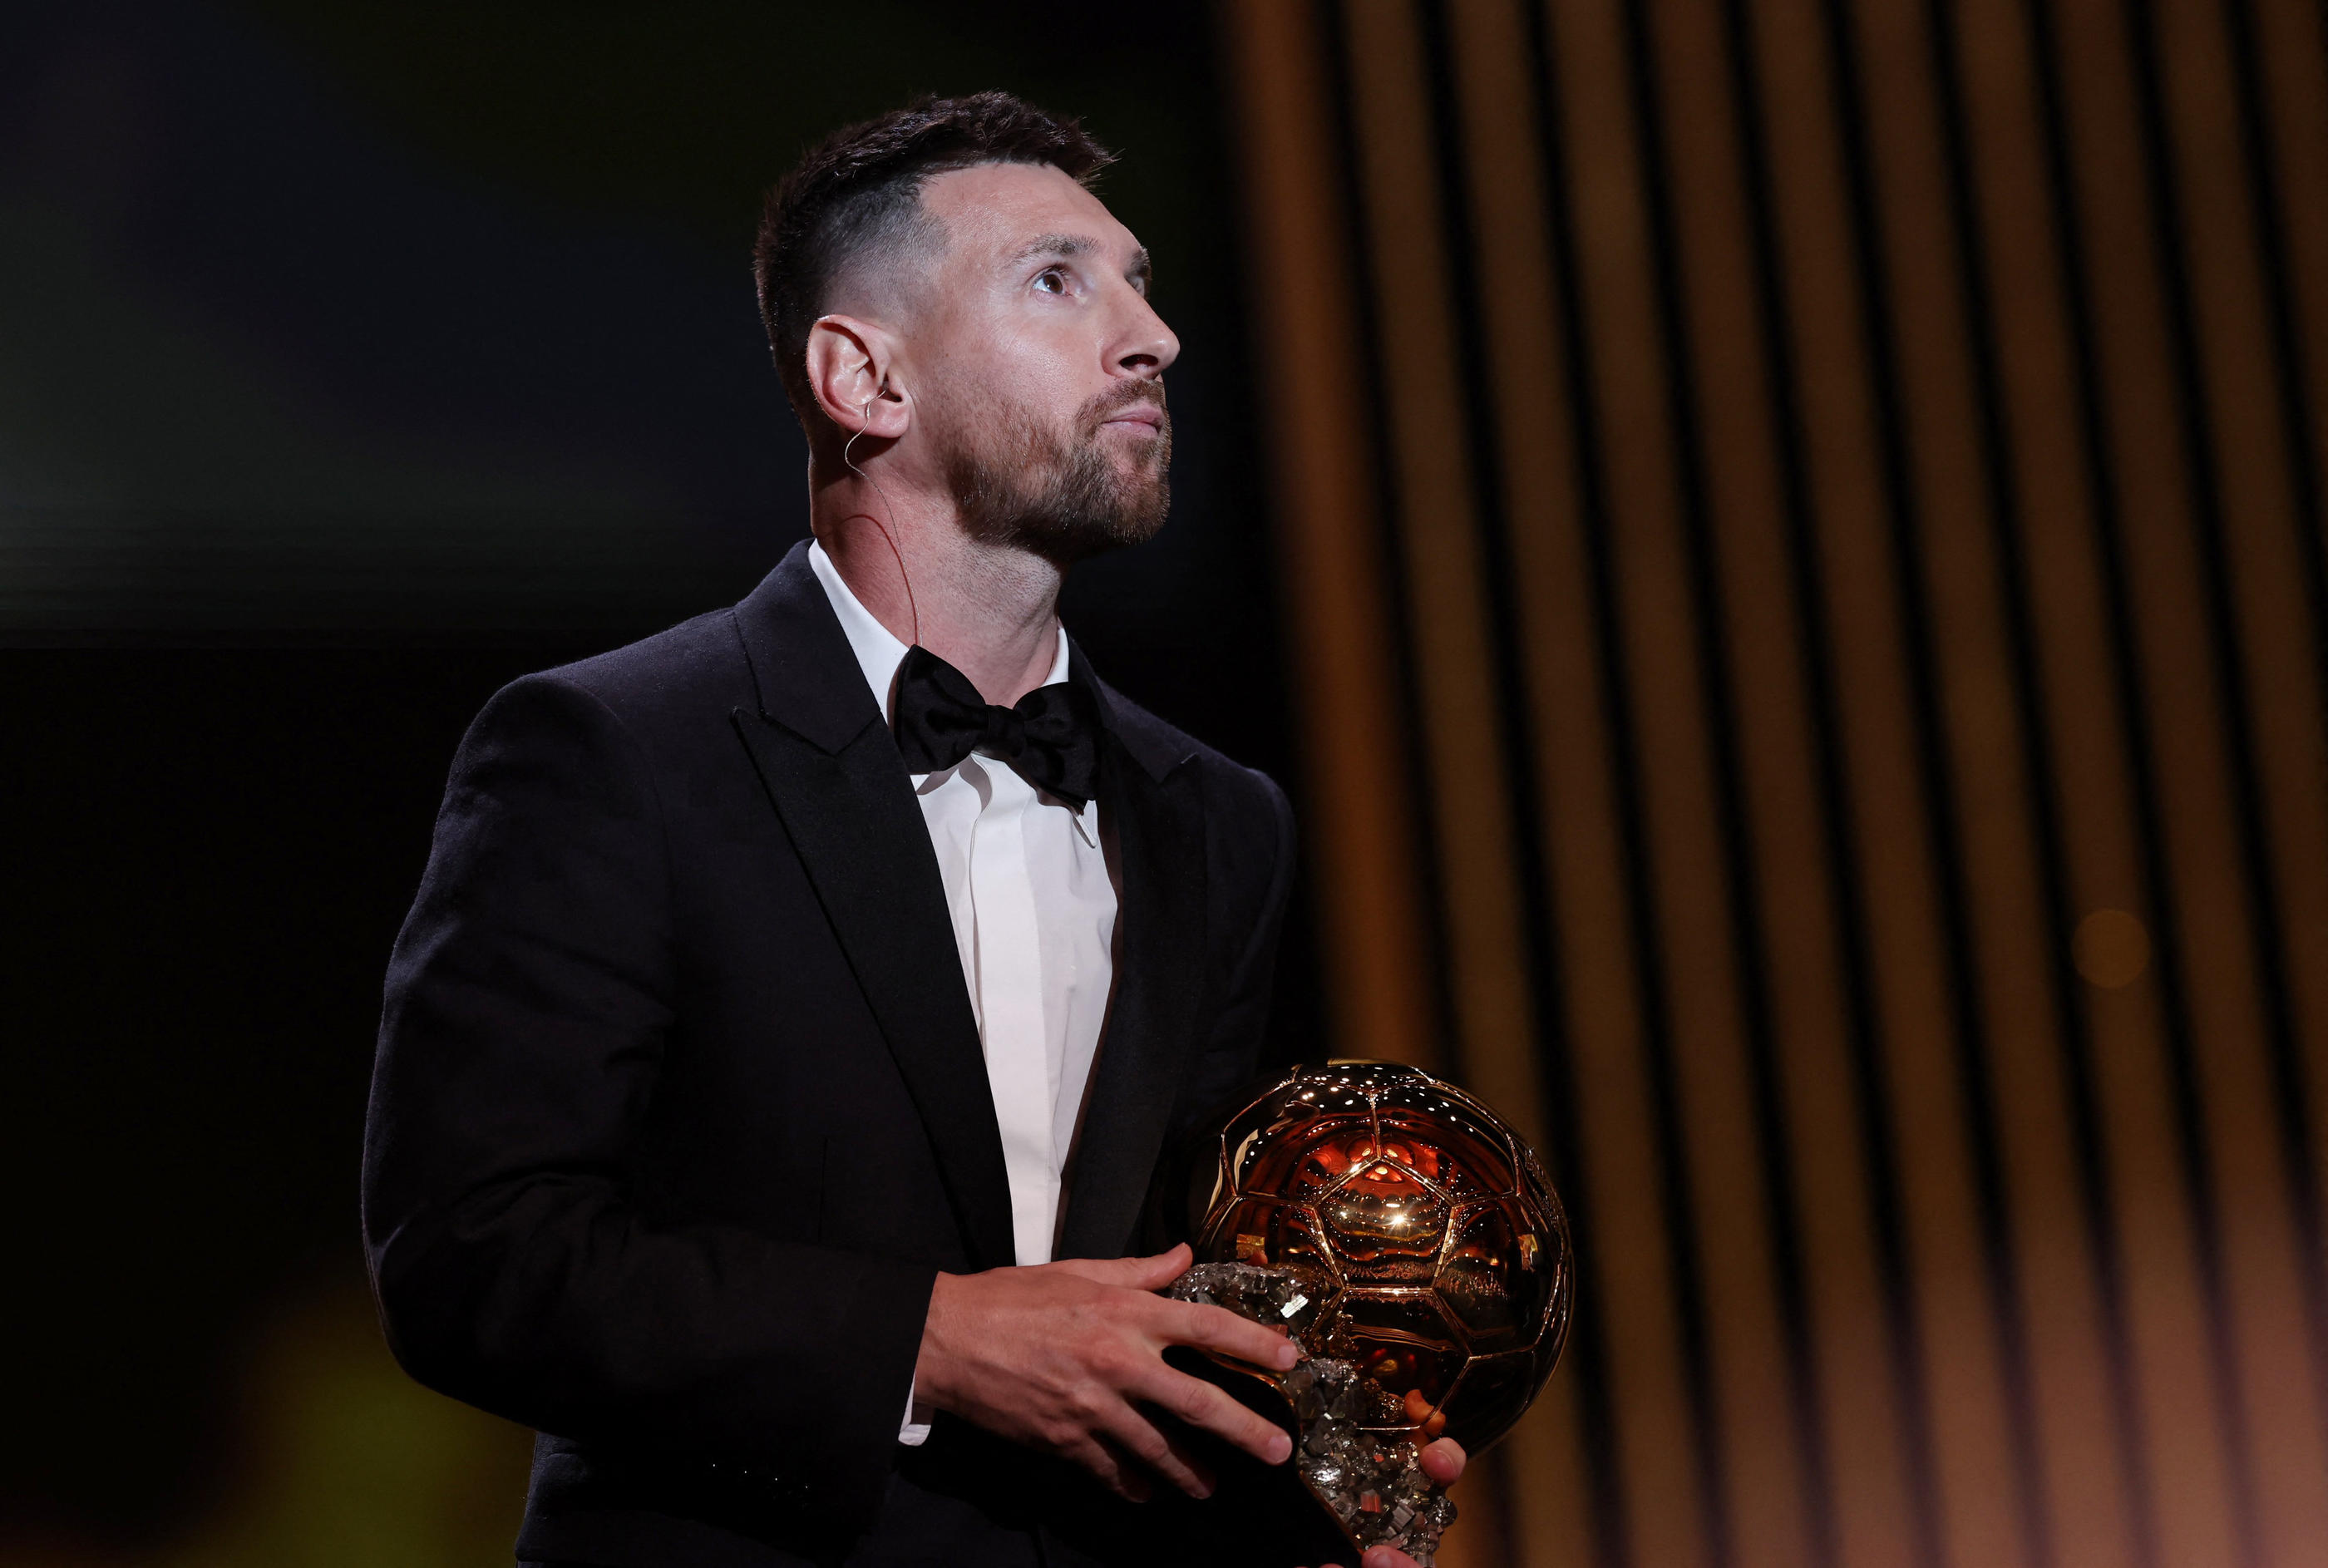 En marge de la remise du Ballon d'Or, Lionel Messi a très brièvement évoqué son passage à Paris, qui n'a pas fonctionné sur le plan sportif. REUTERS/Stephanie Lecocq